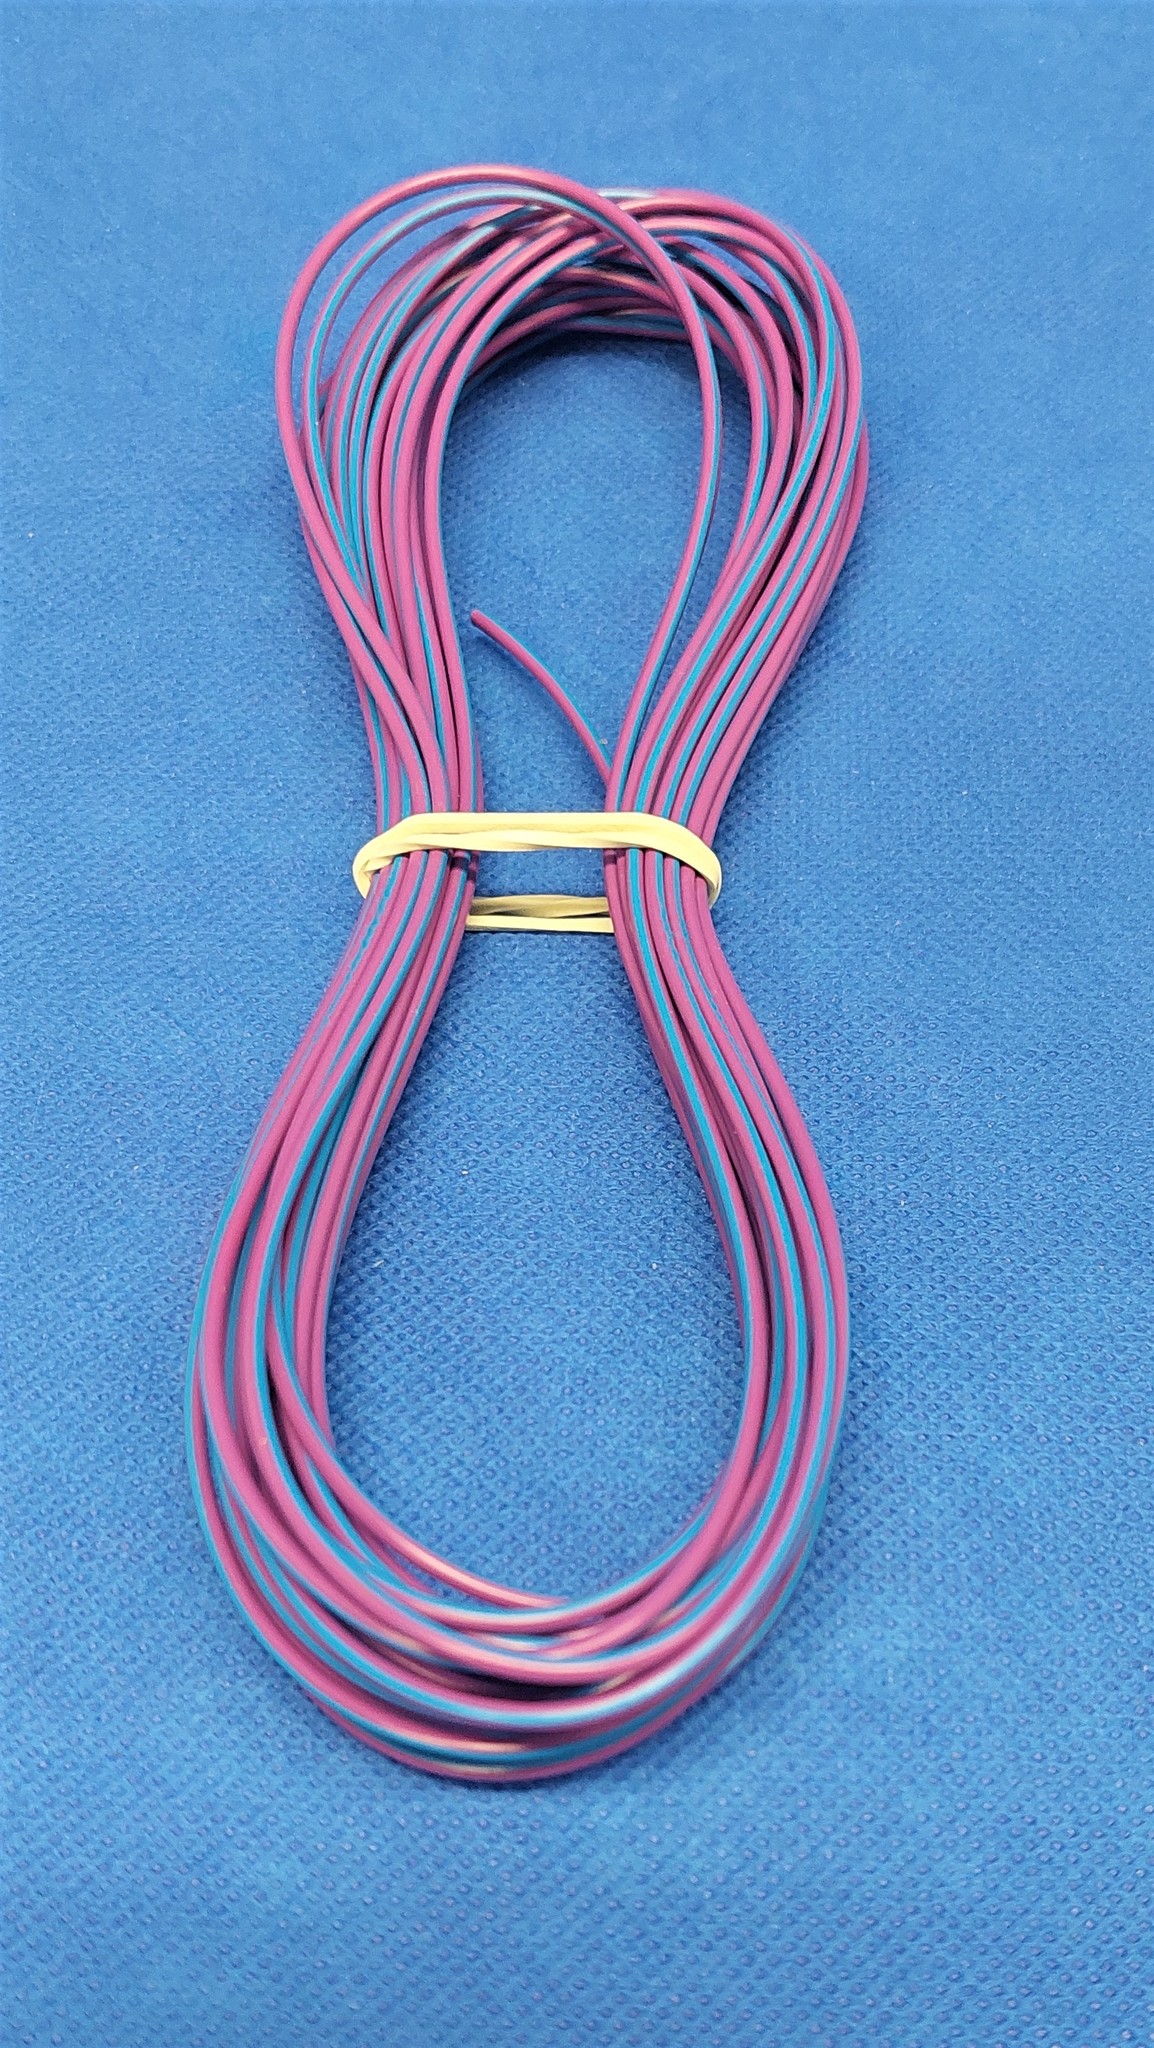 DCSk - 10mm² - 2m Câble Électrique Unipolaire pour Application Automobile -  Véhicule, Voiture, Moto - Type FLRY B Asymétrique 10mm2 - Couleur Rouge 